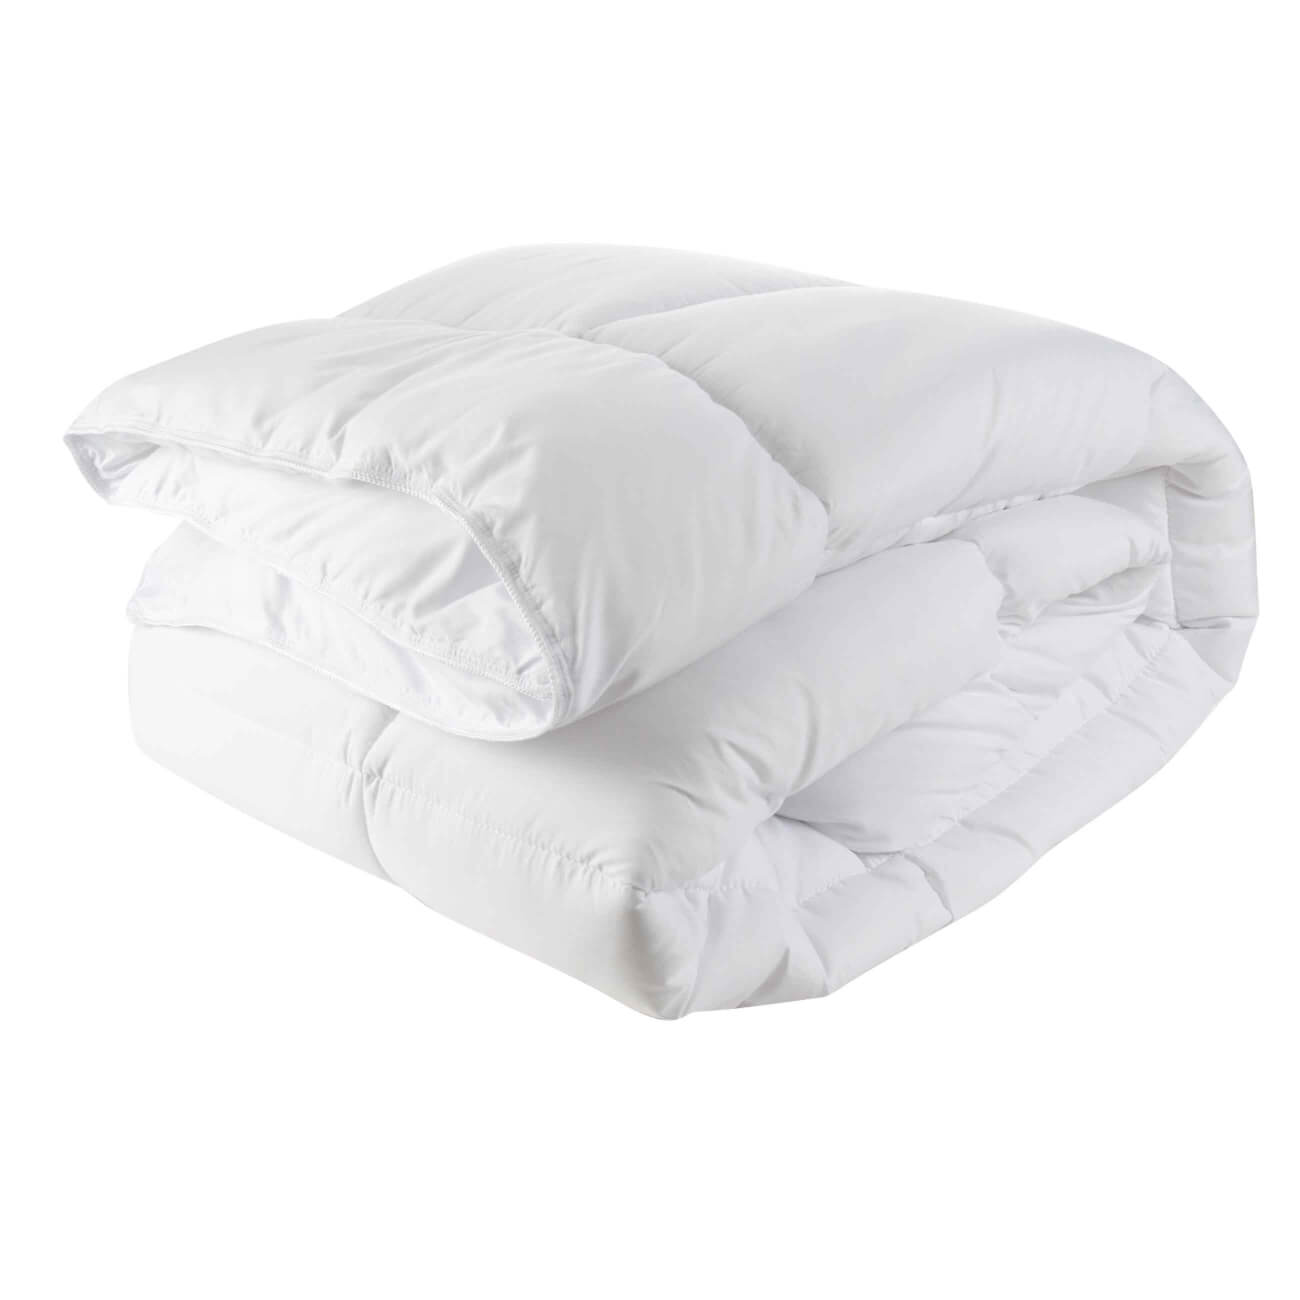 Одеяло, 140х200 см, микрофибра, Simply soft одеяло 140х200 см хлопок микрофибра soft cotton